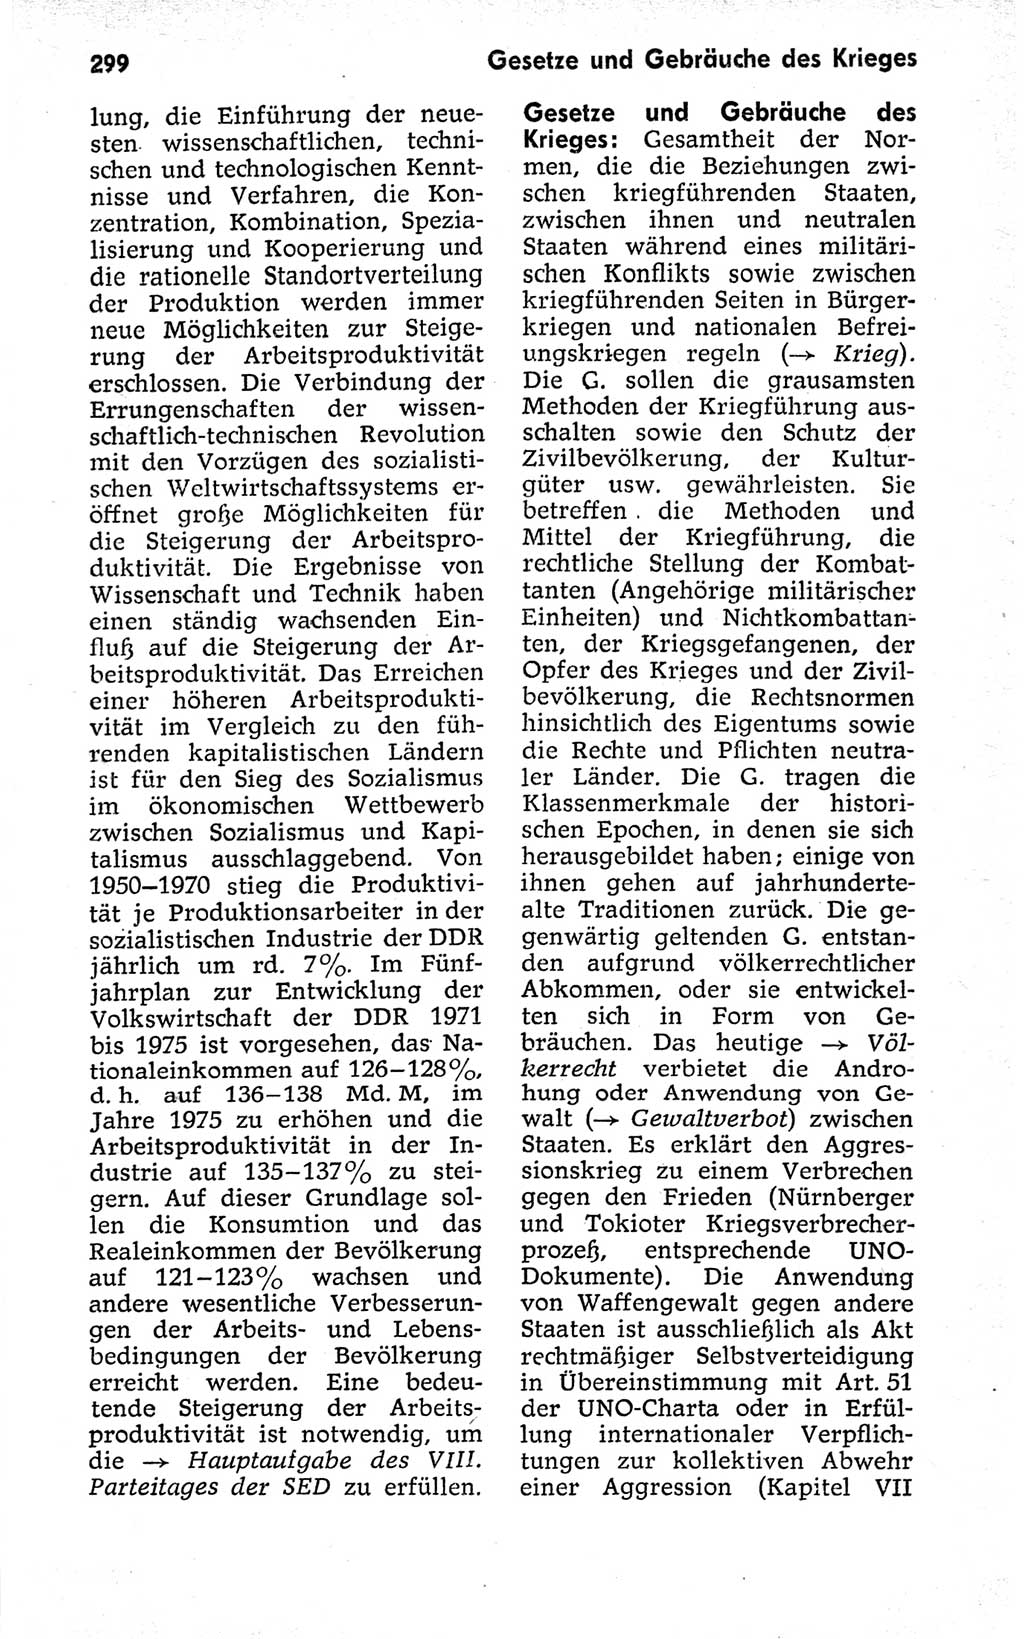 Kleines politisches Wörterbuch [Deutsche Demokratische Republik (DDR)] 1973, Seite 299 (Kl. pol. Wb. DDR 1973, S. 299)